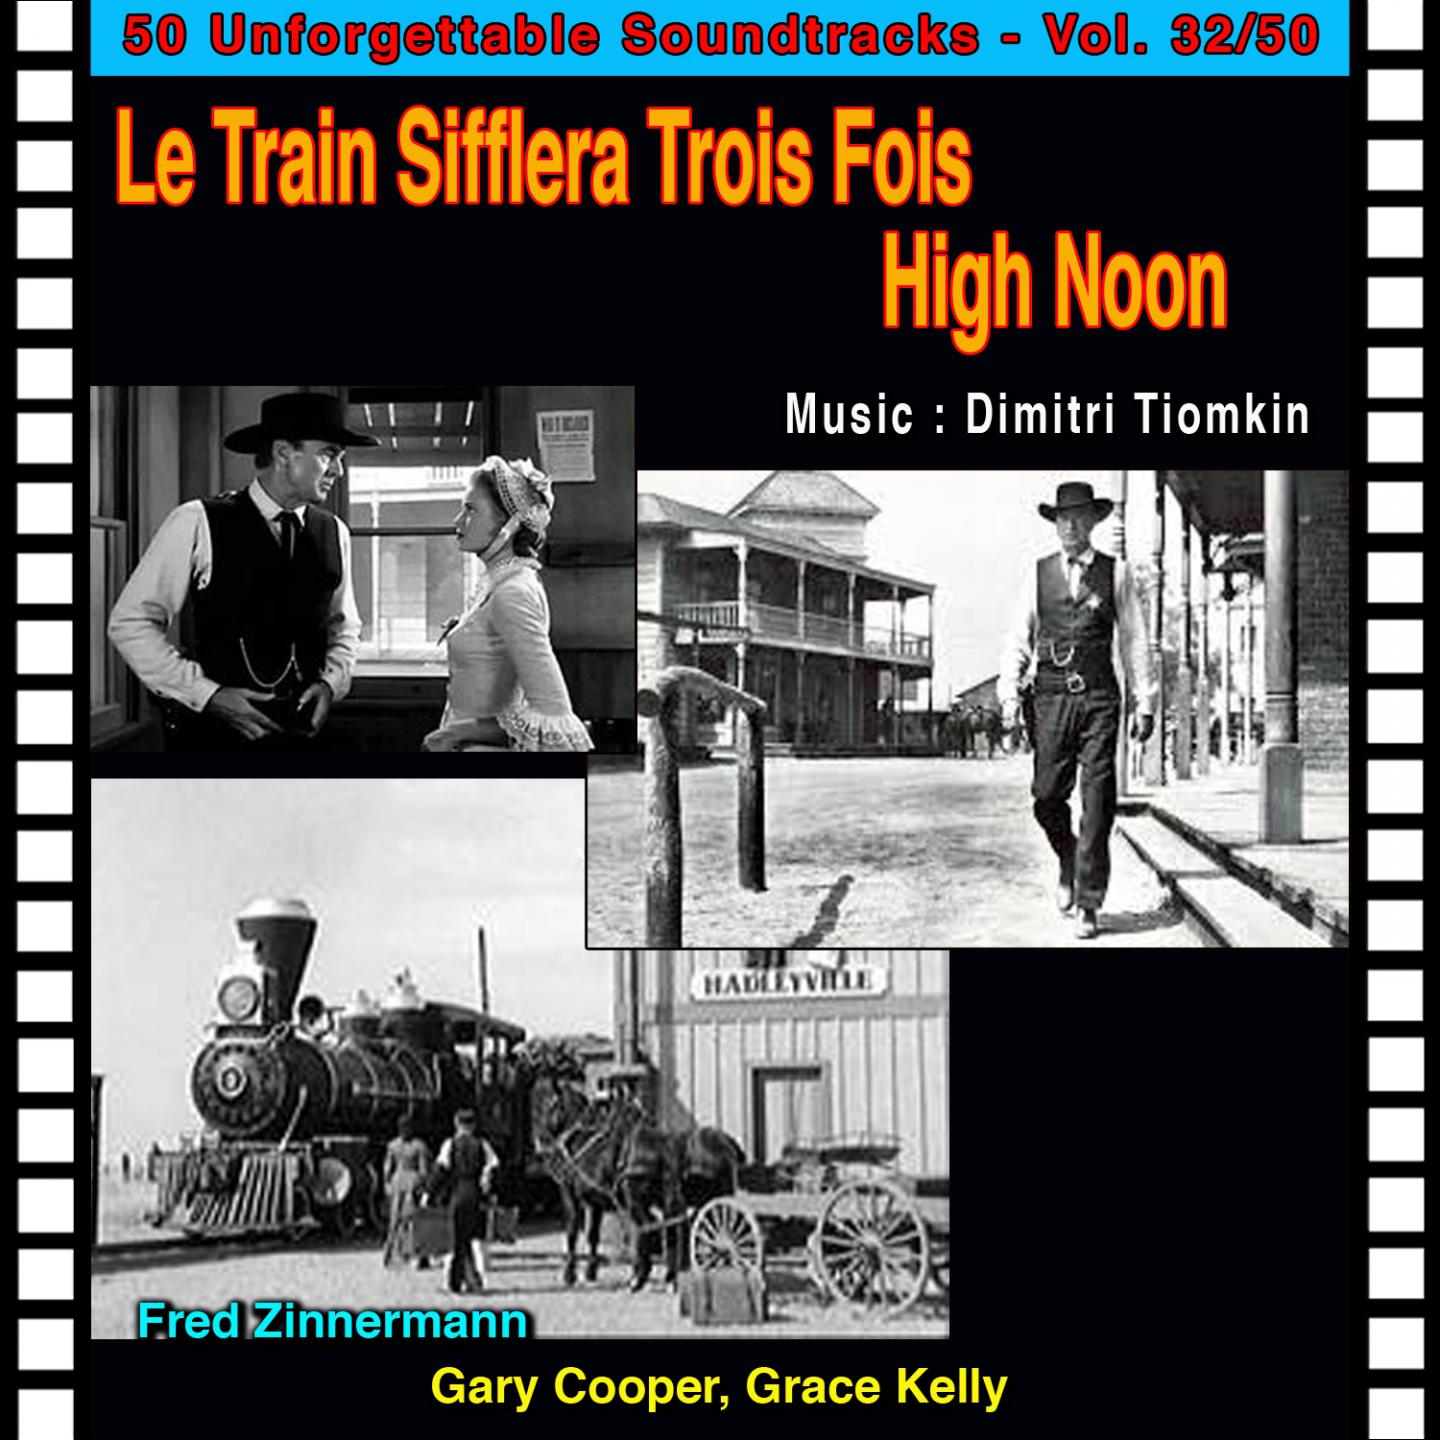 Frank Miller Shot (Finale) (Le Train Sifflera Trois Fois - High Noon)